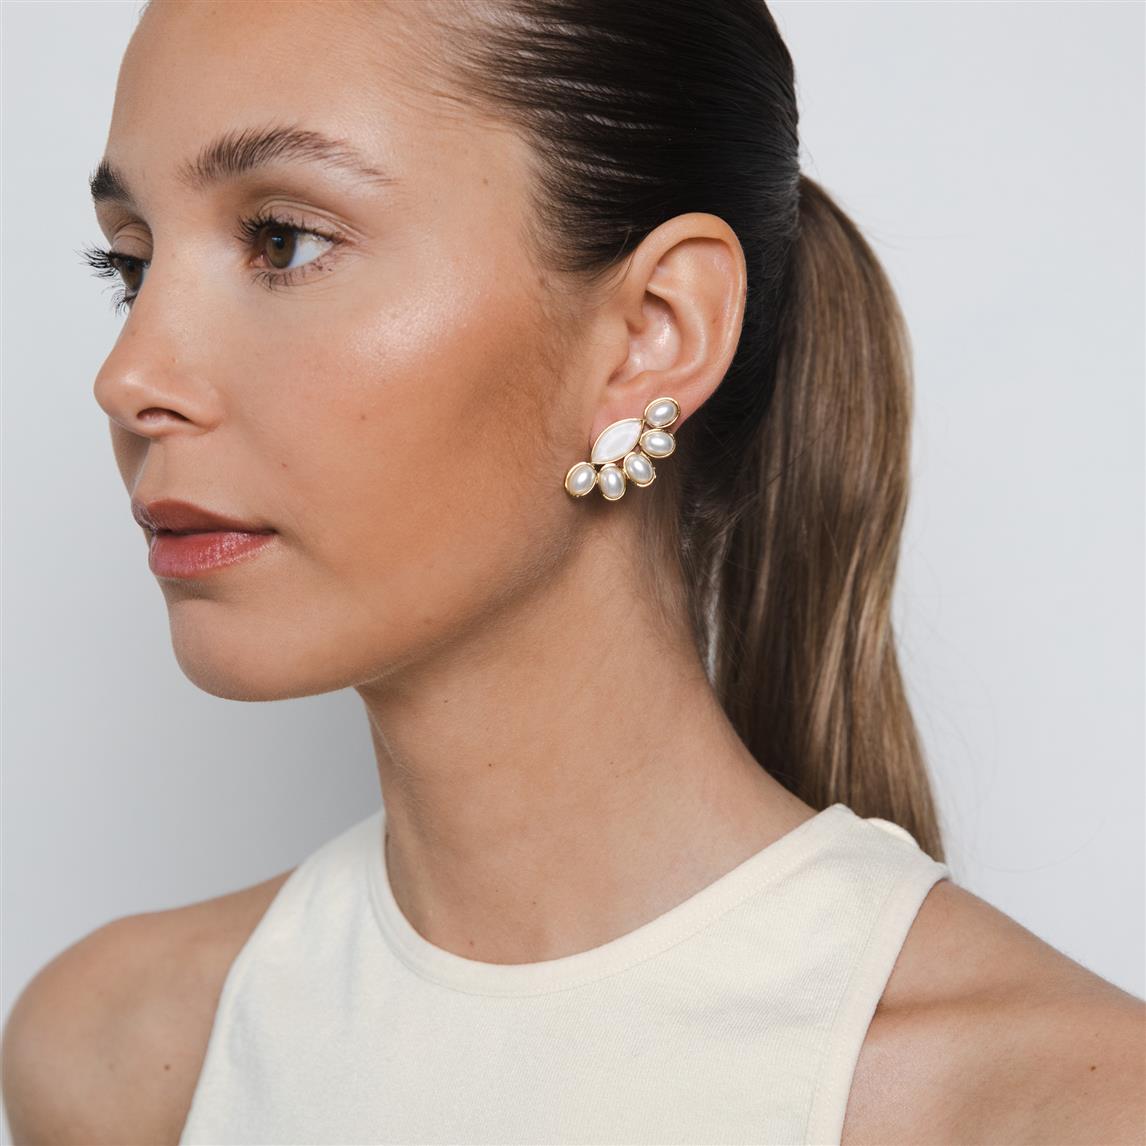 Navette eye studs pearls earrings